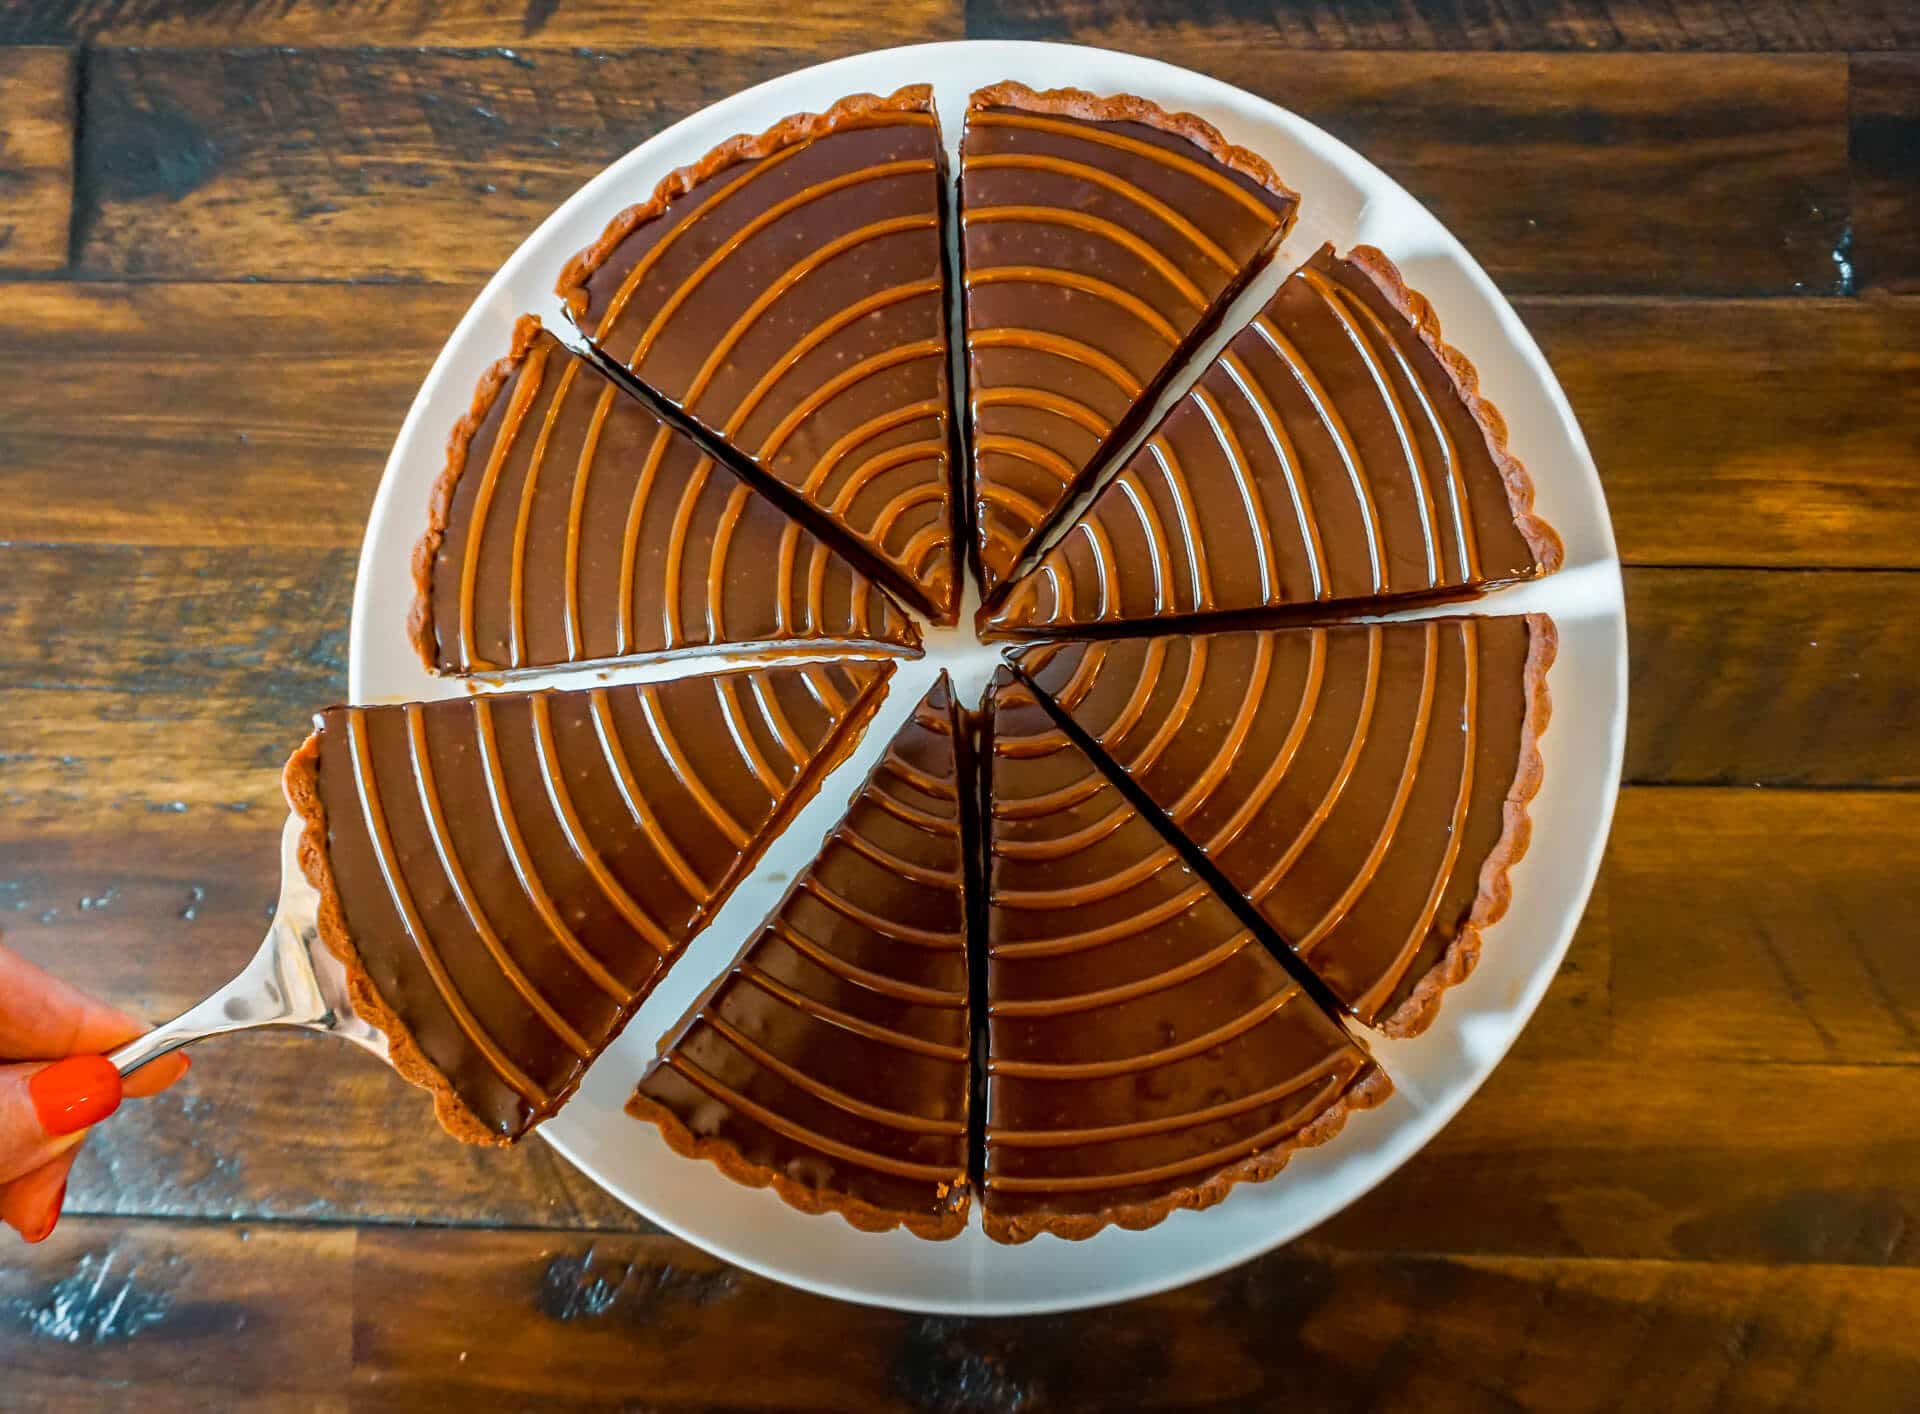 Chocolate Caramel Tart – A Decadent Dessert